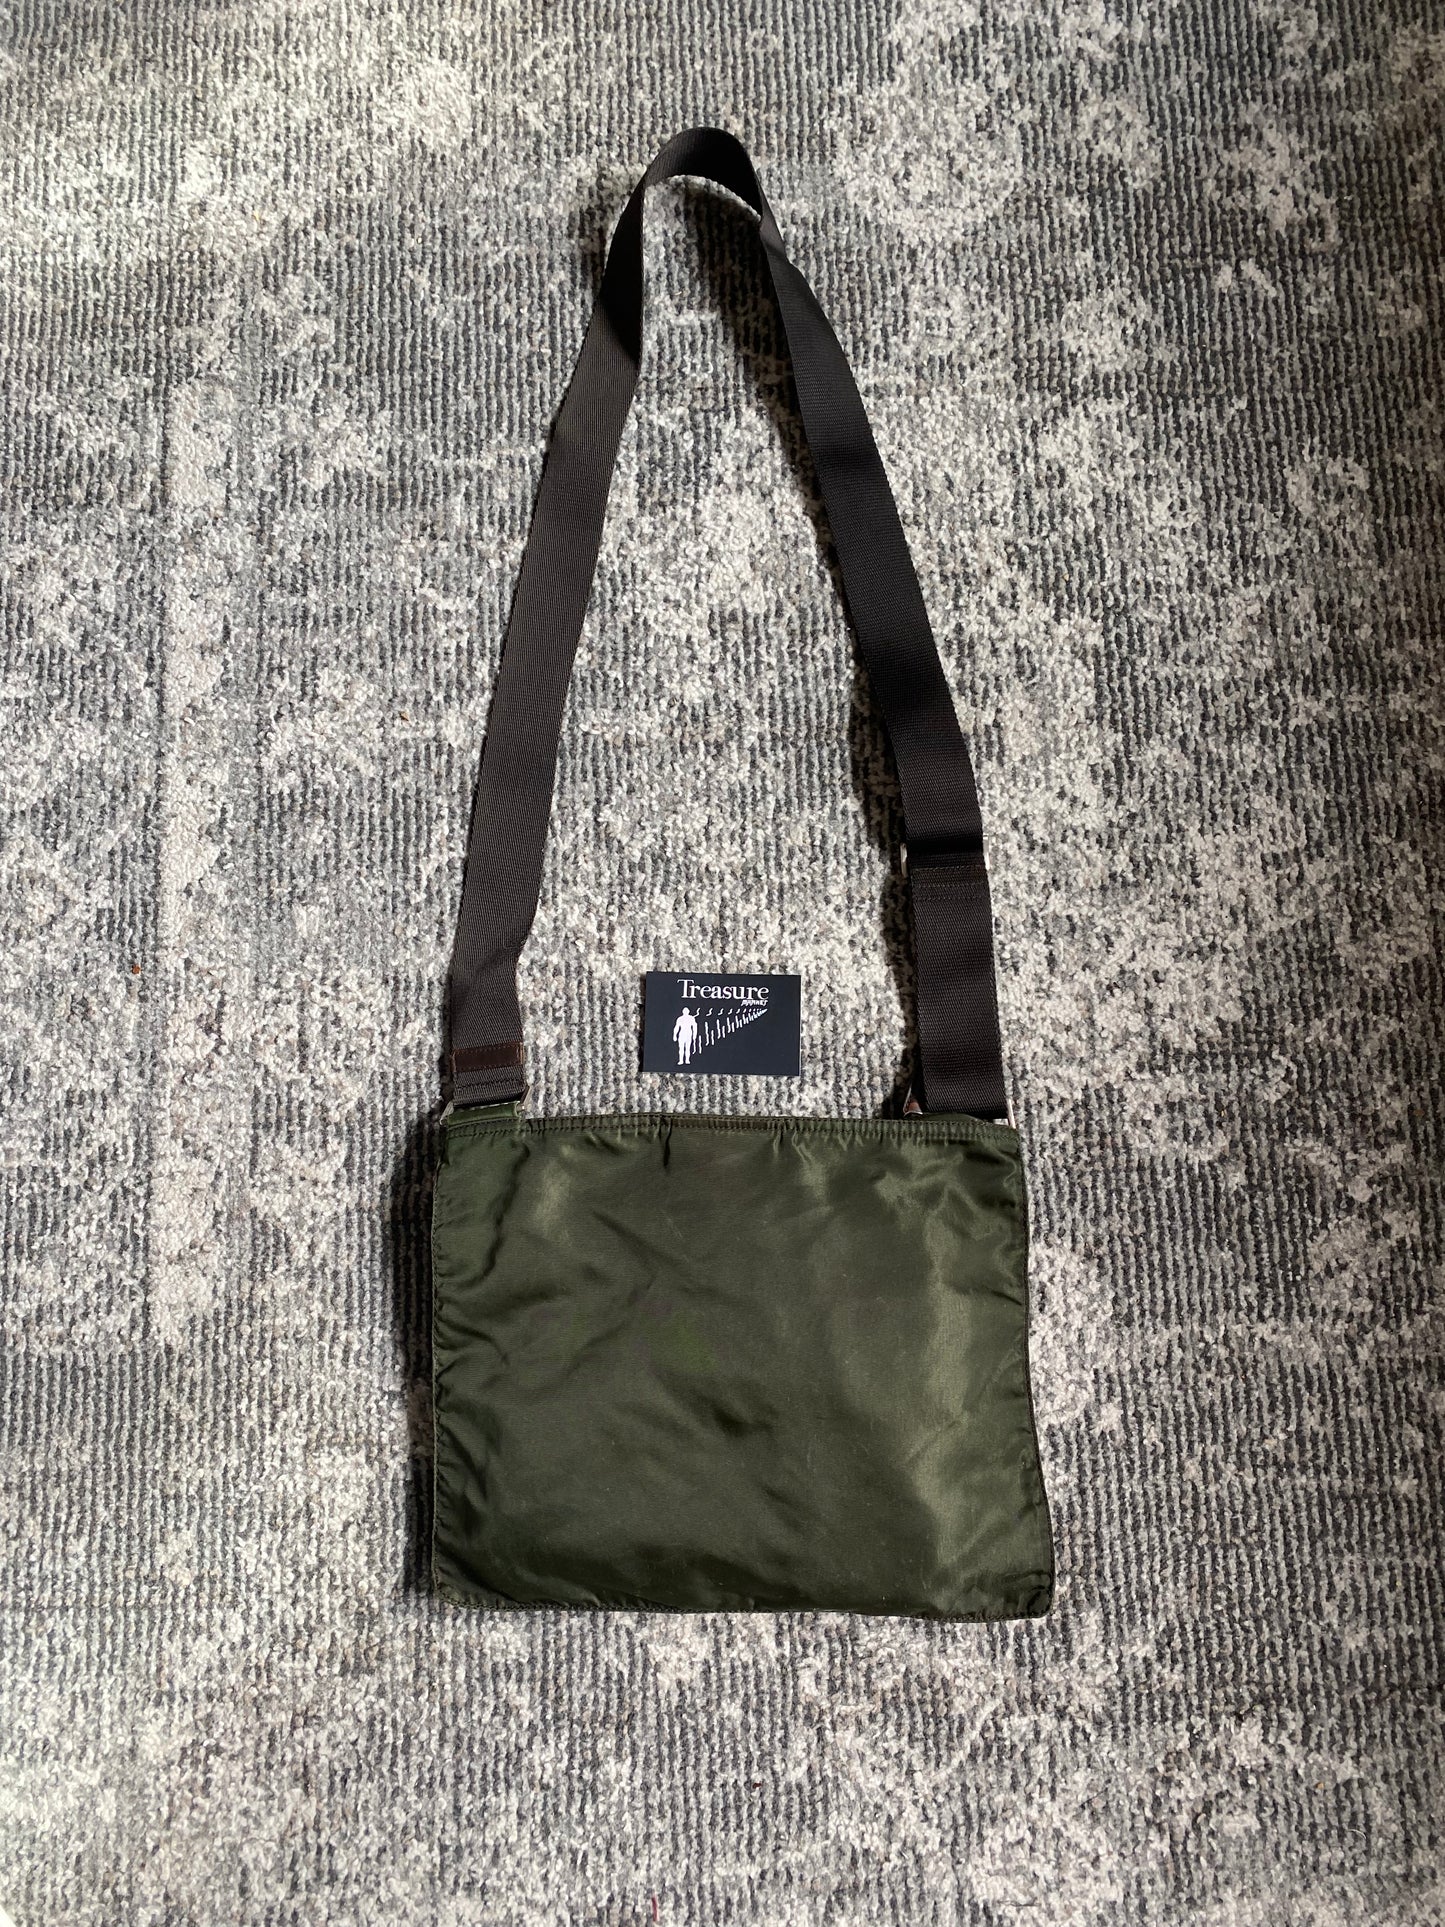 Prada Flat Bag